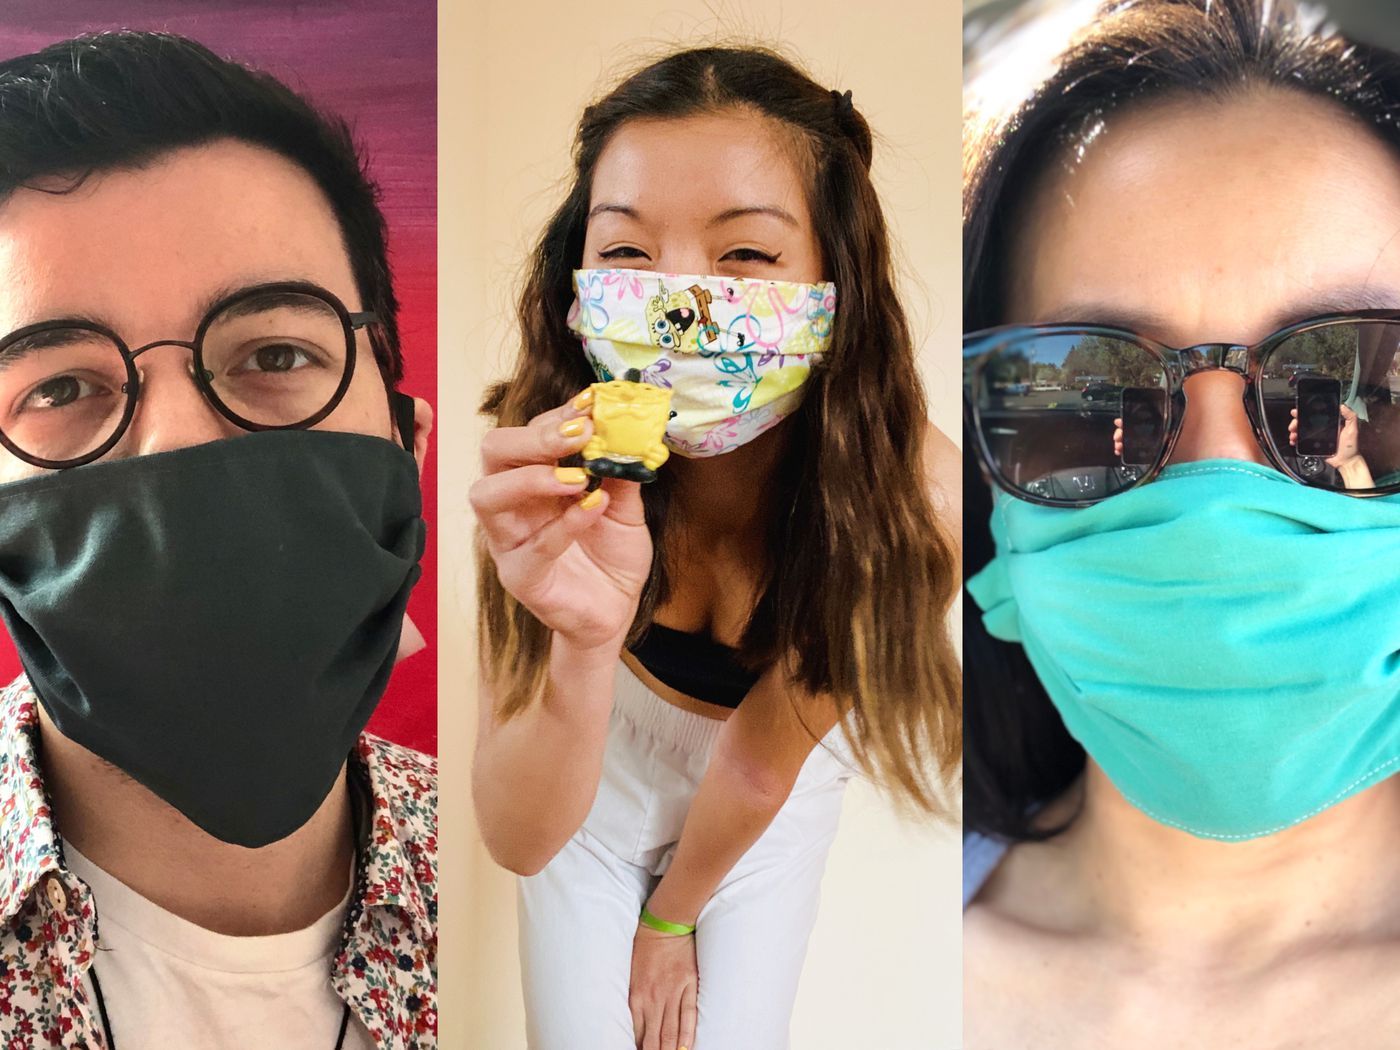 Homemade face masks Vox readers created for coronavirus